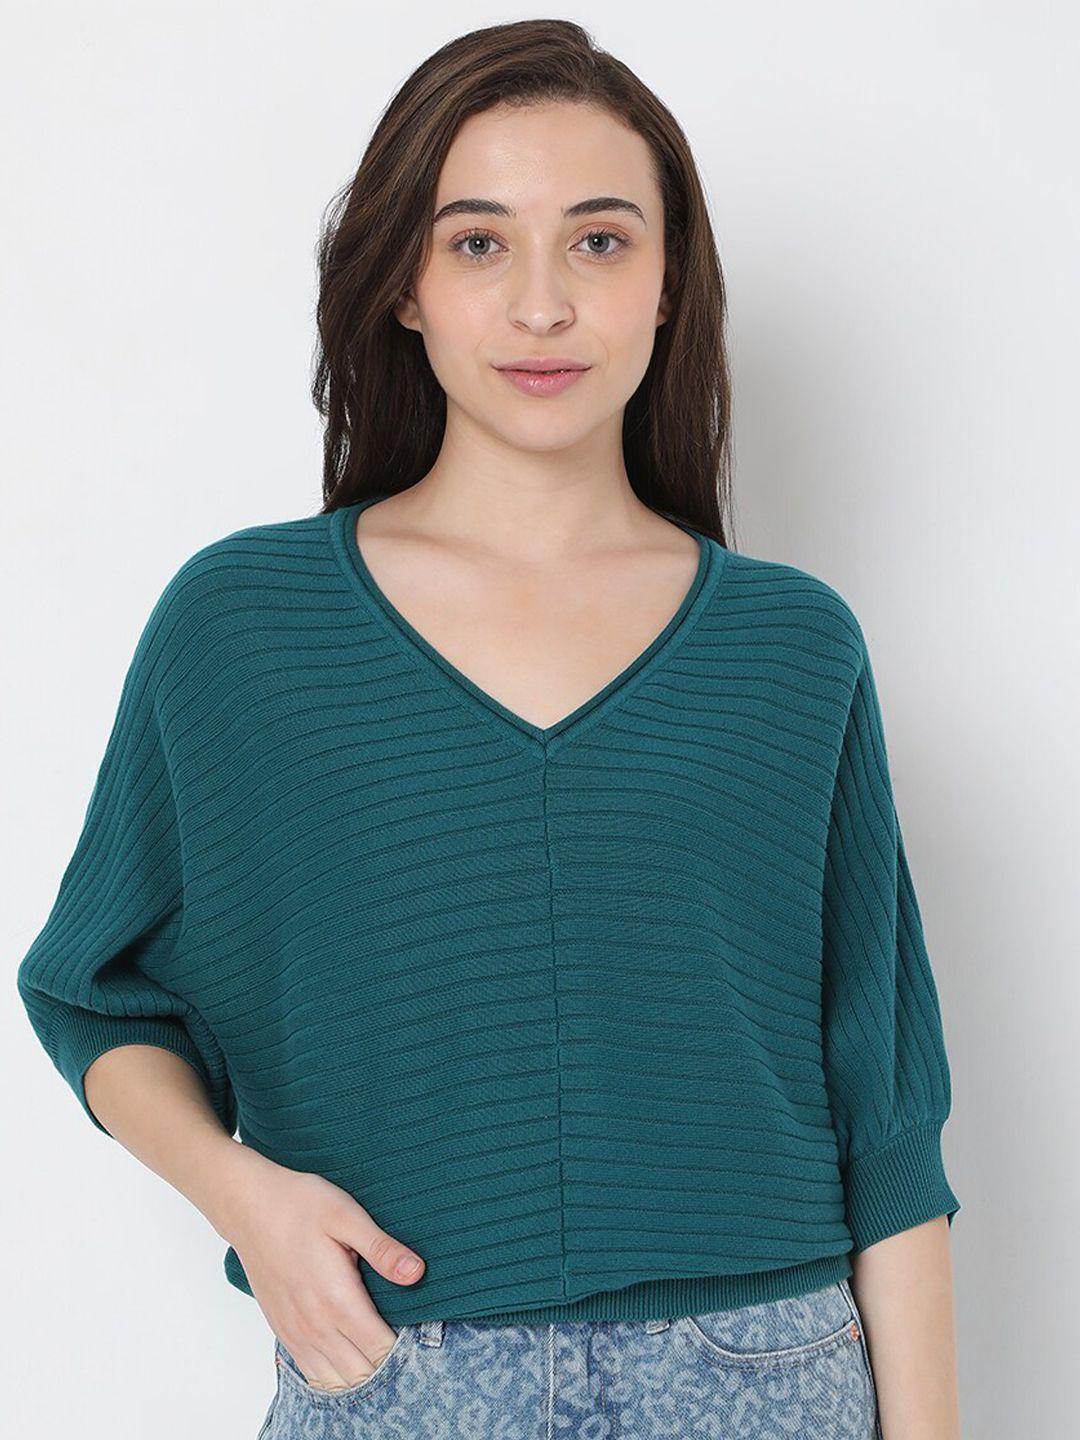 vero moda women green striped pullover sweaters